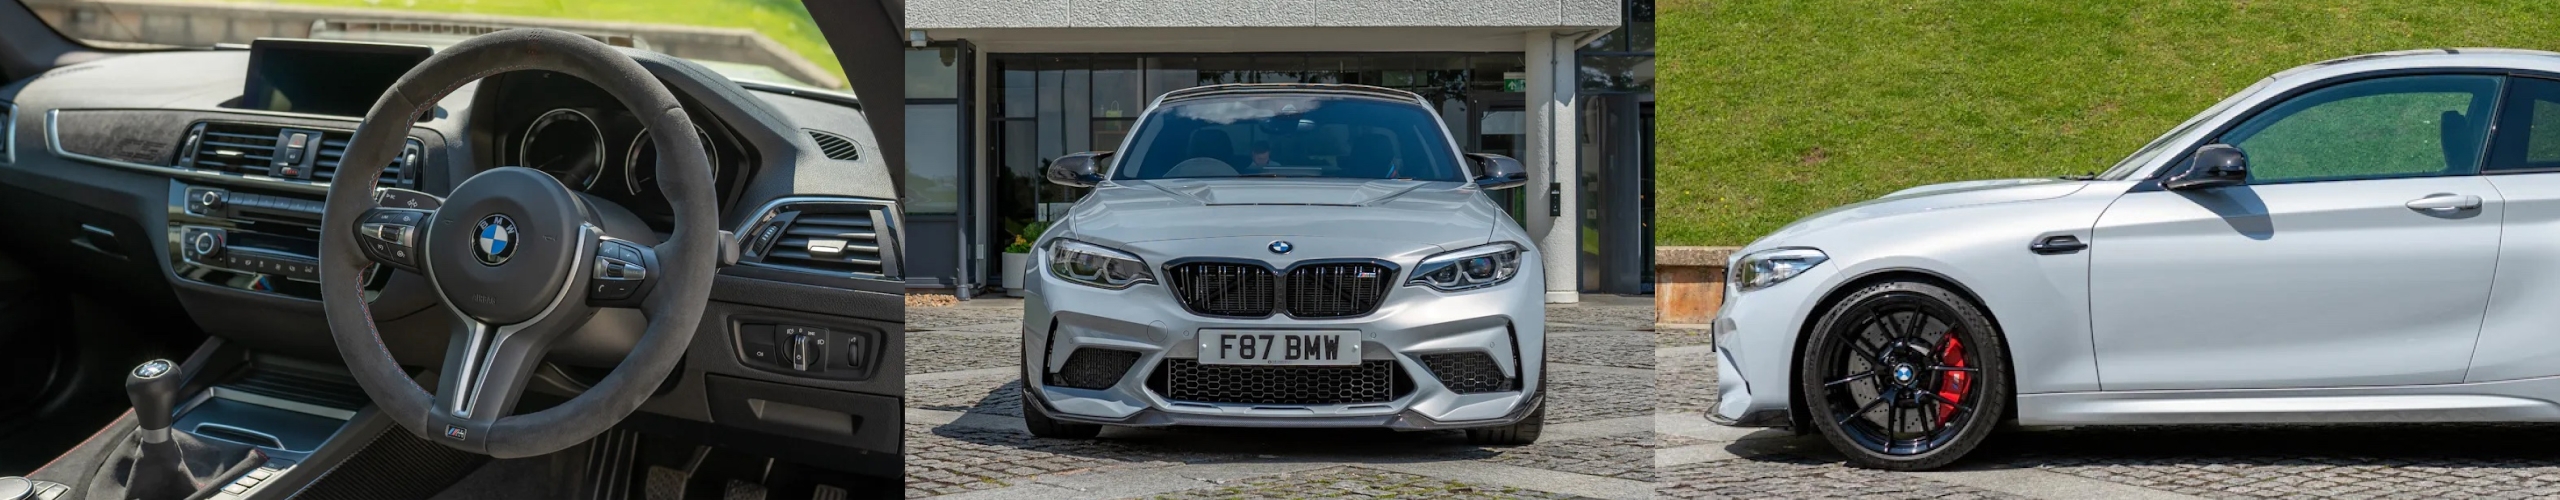 2020 BMW M2 CS: A True Ultimate Driving Machine